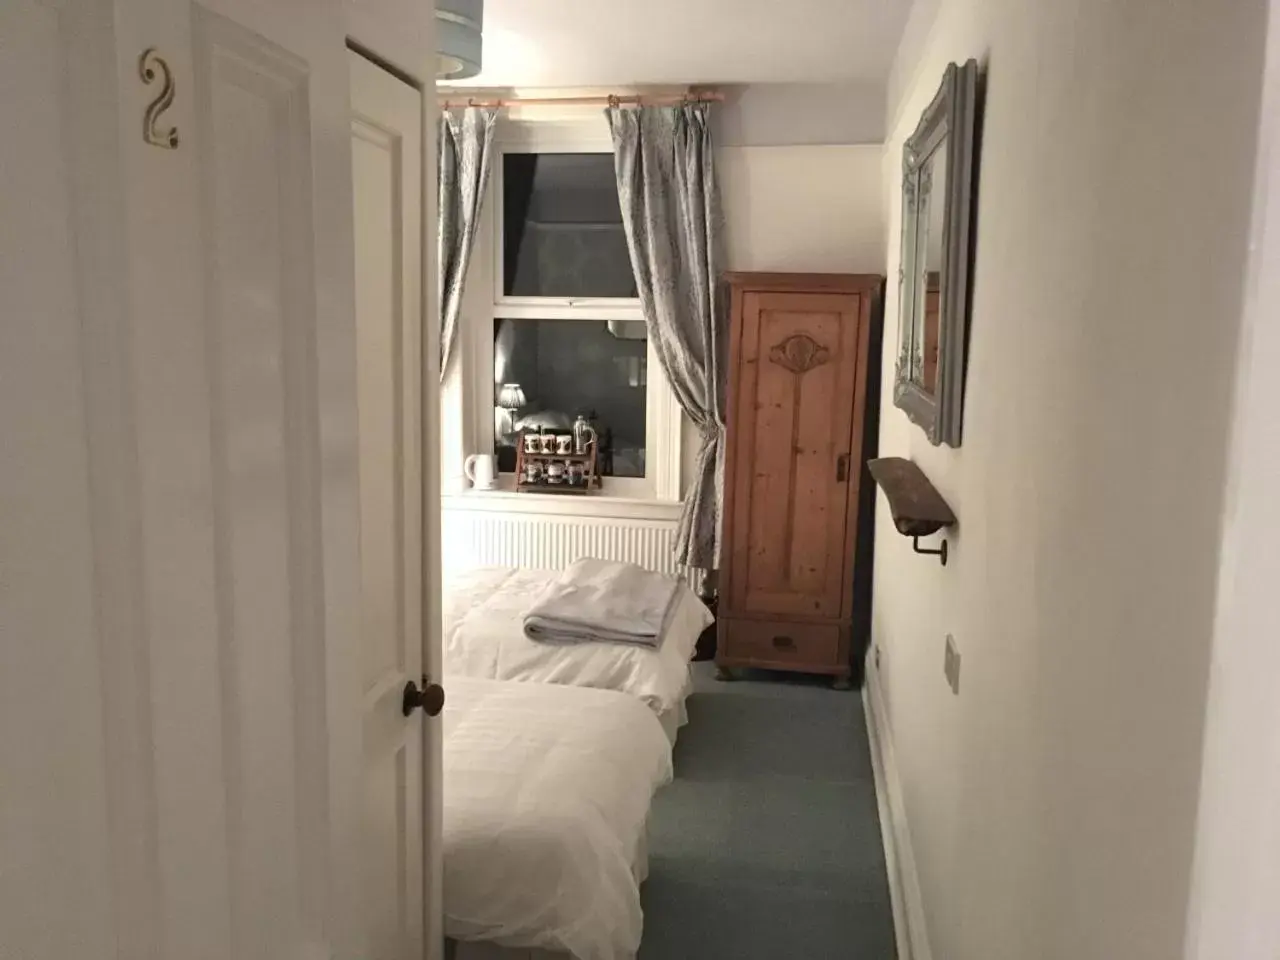 Bedroom, Bathroom in Craiglands Bed and Breakfast, Grassington